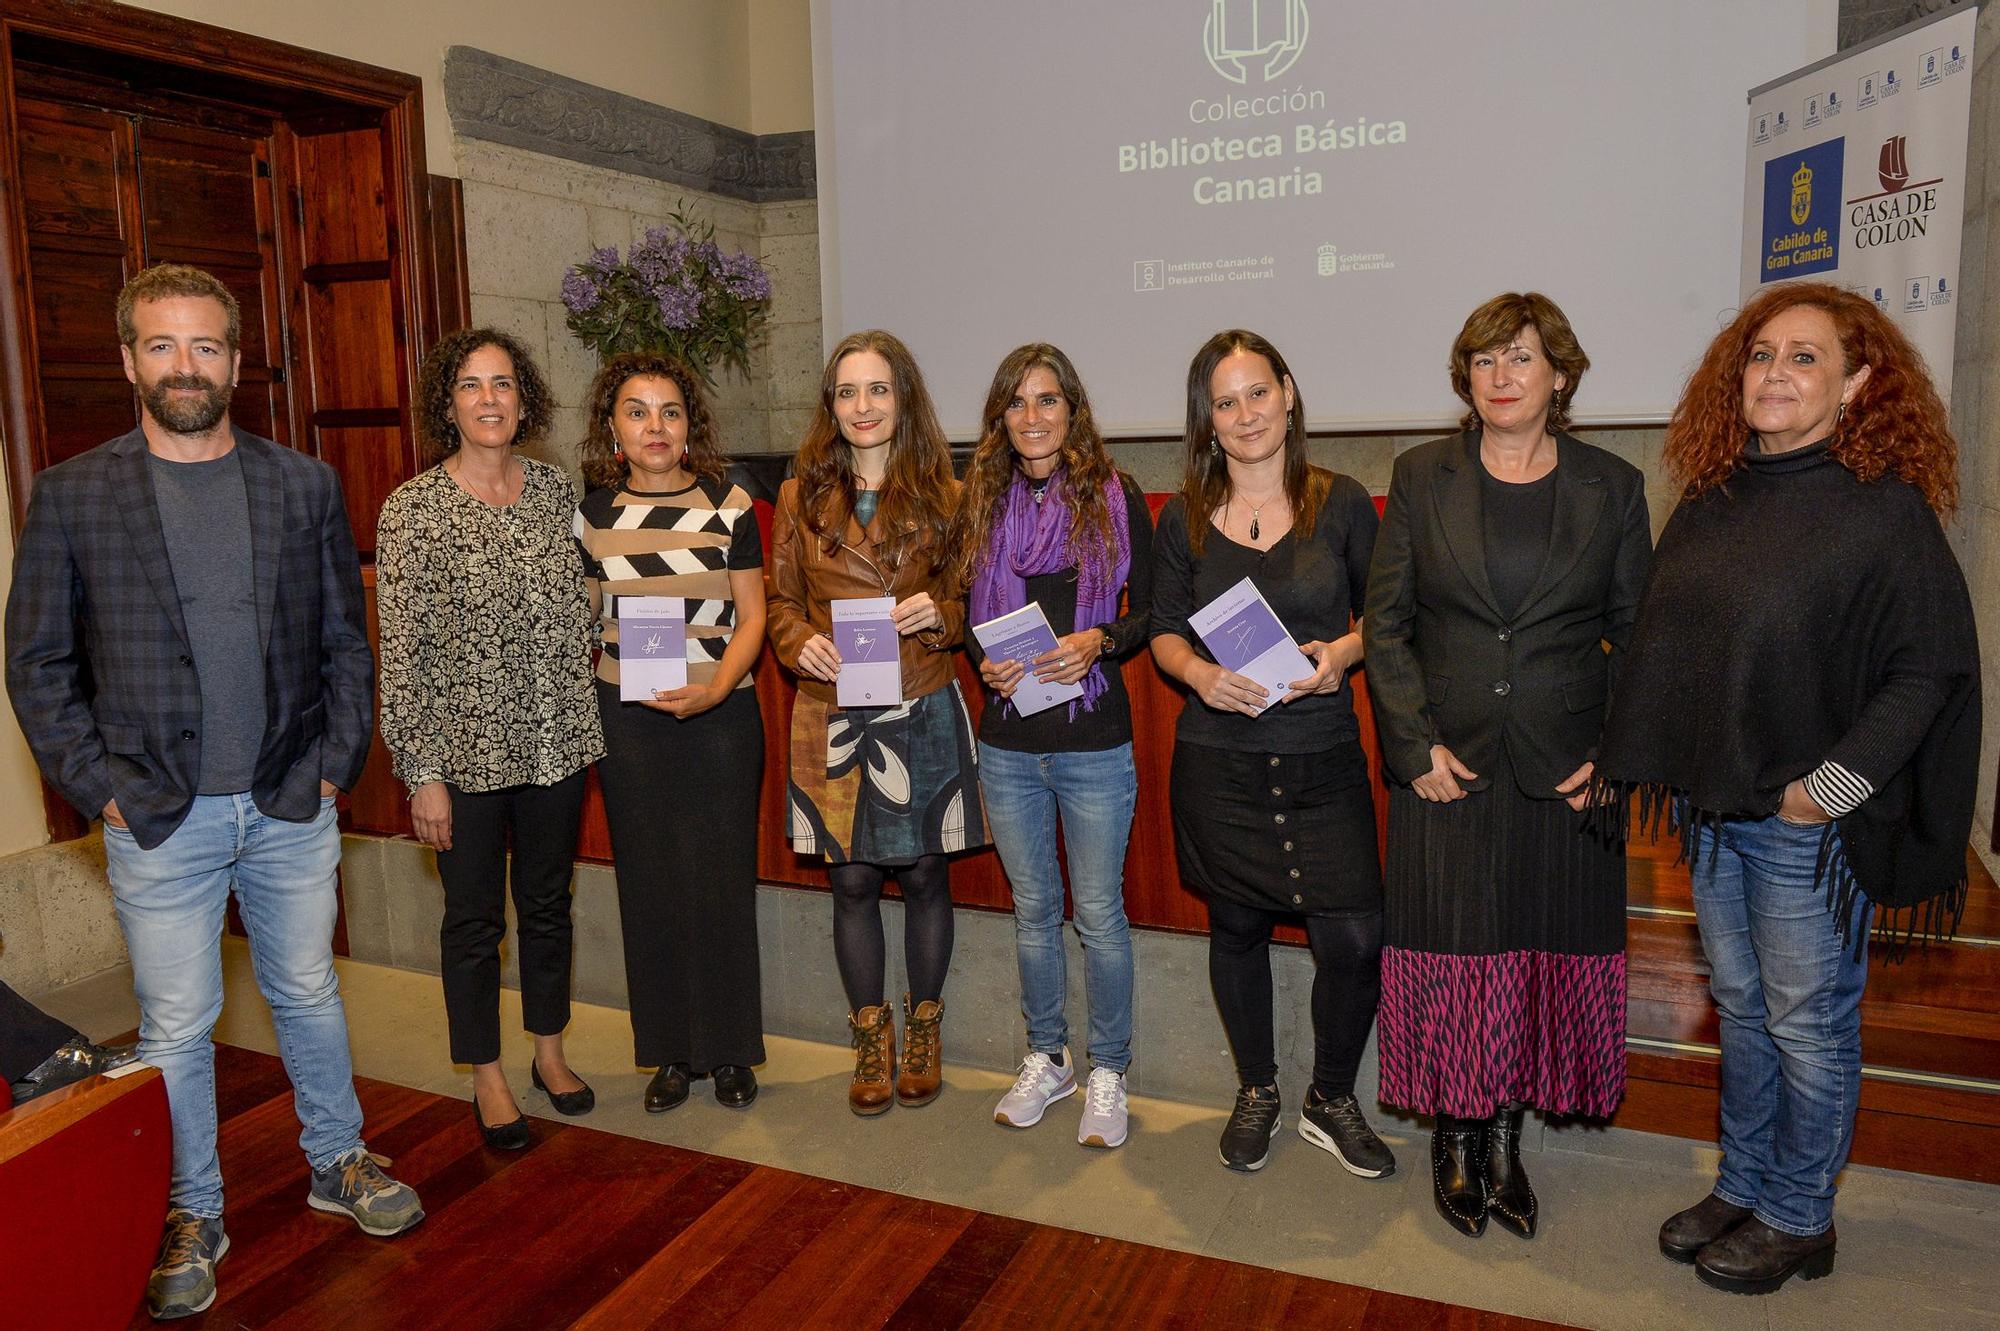 Presentación de la nueva publicación de Biblioteca Básica Canaria